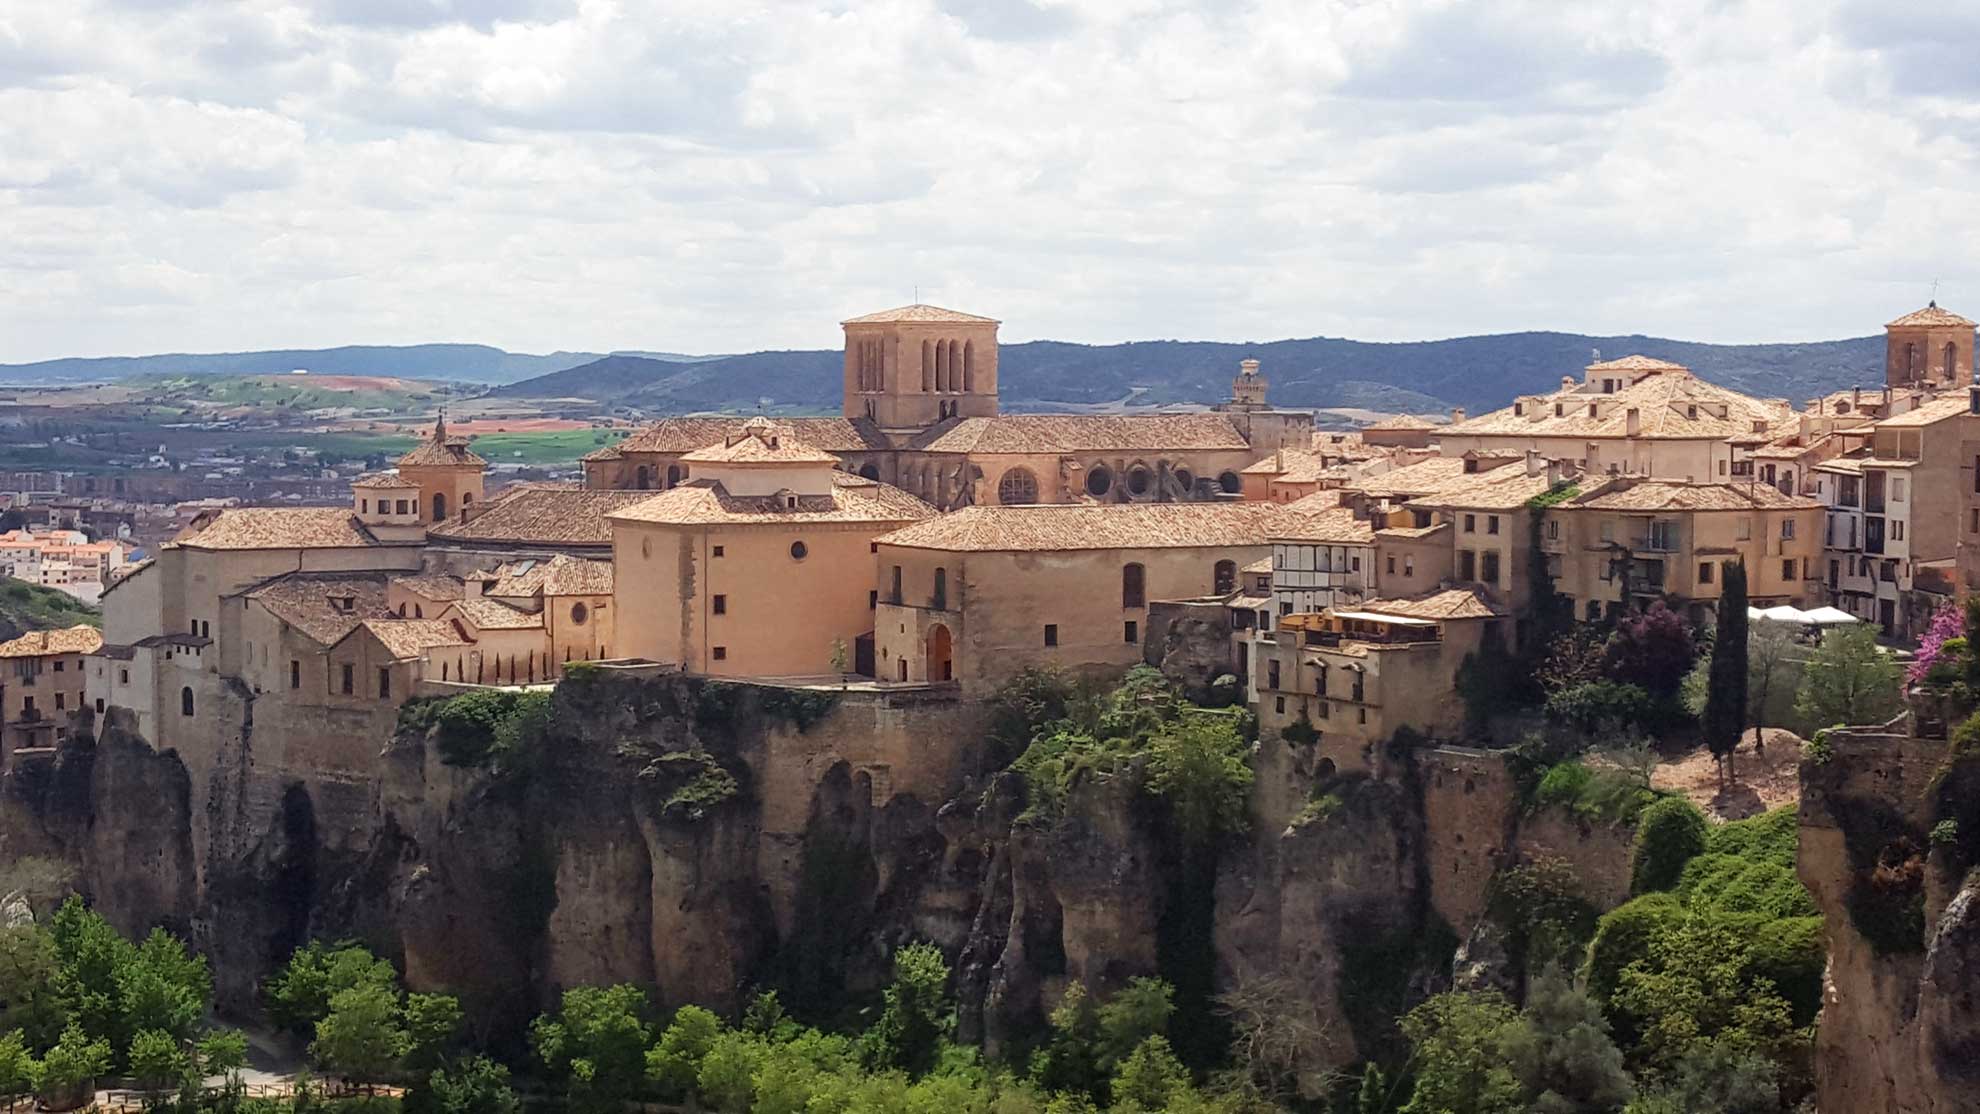 Spania. Cuenca. Panoramautsikt mot gamlebyen. Foto